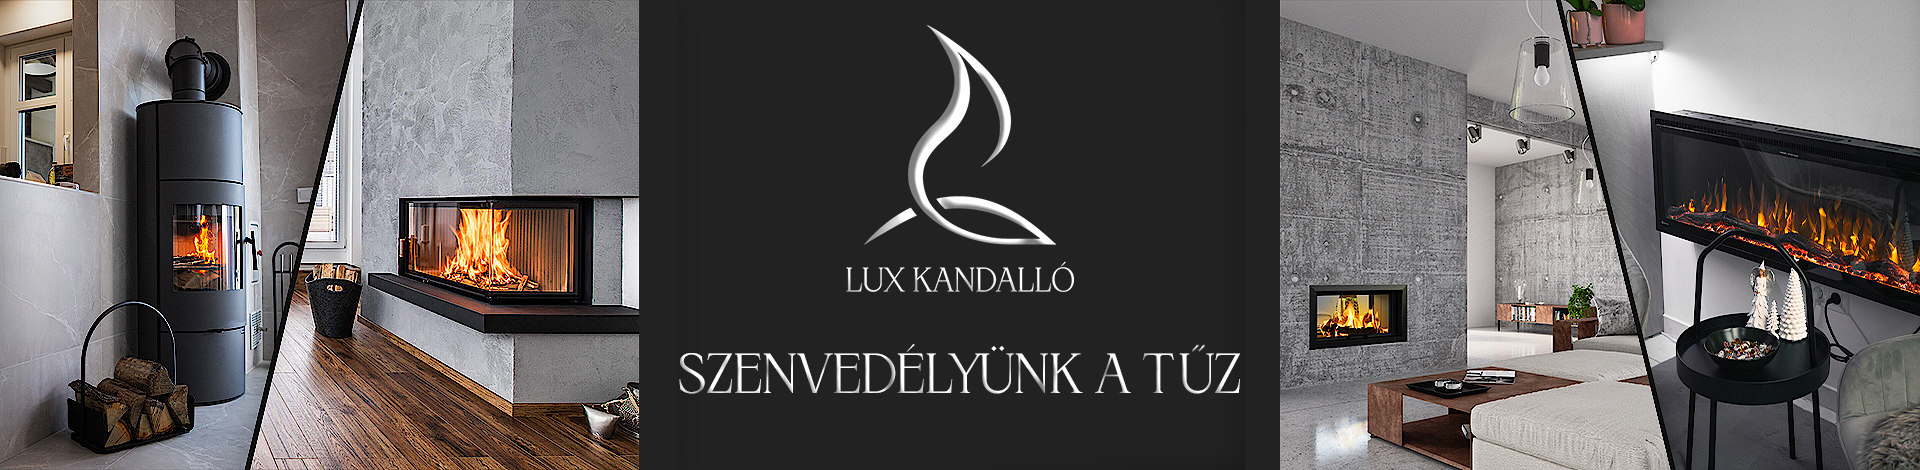 Lux Kandalló - Szakmai nyíltnap